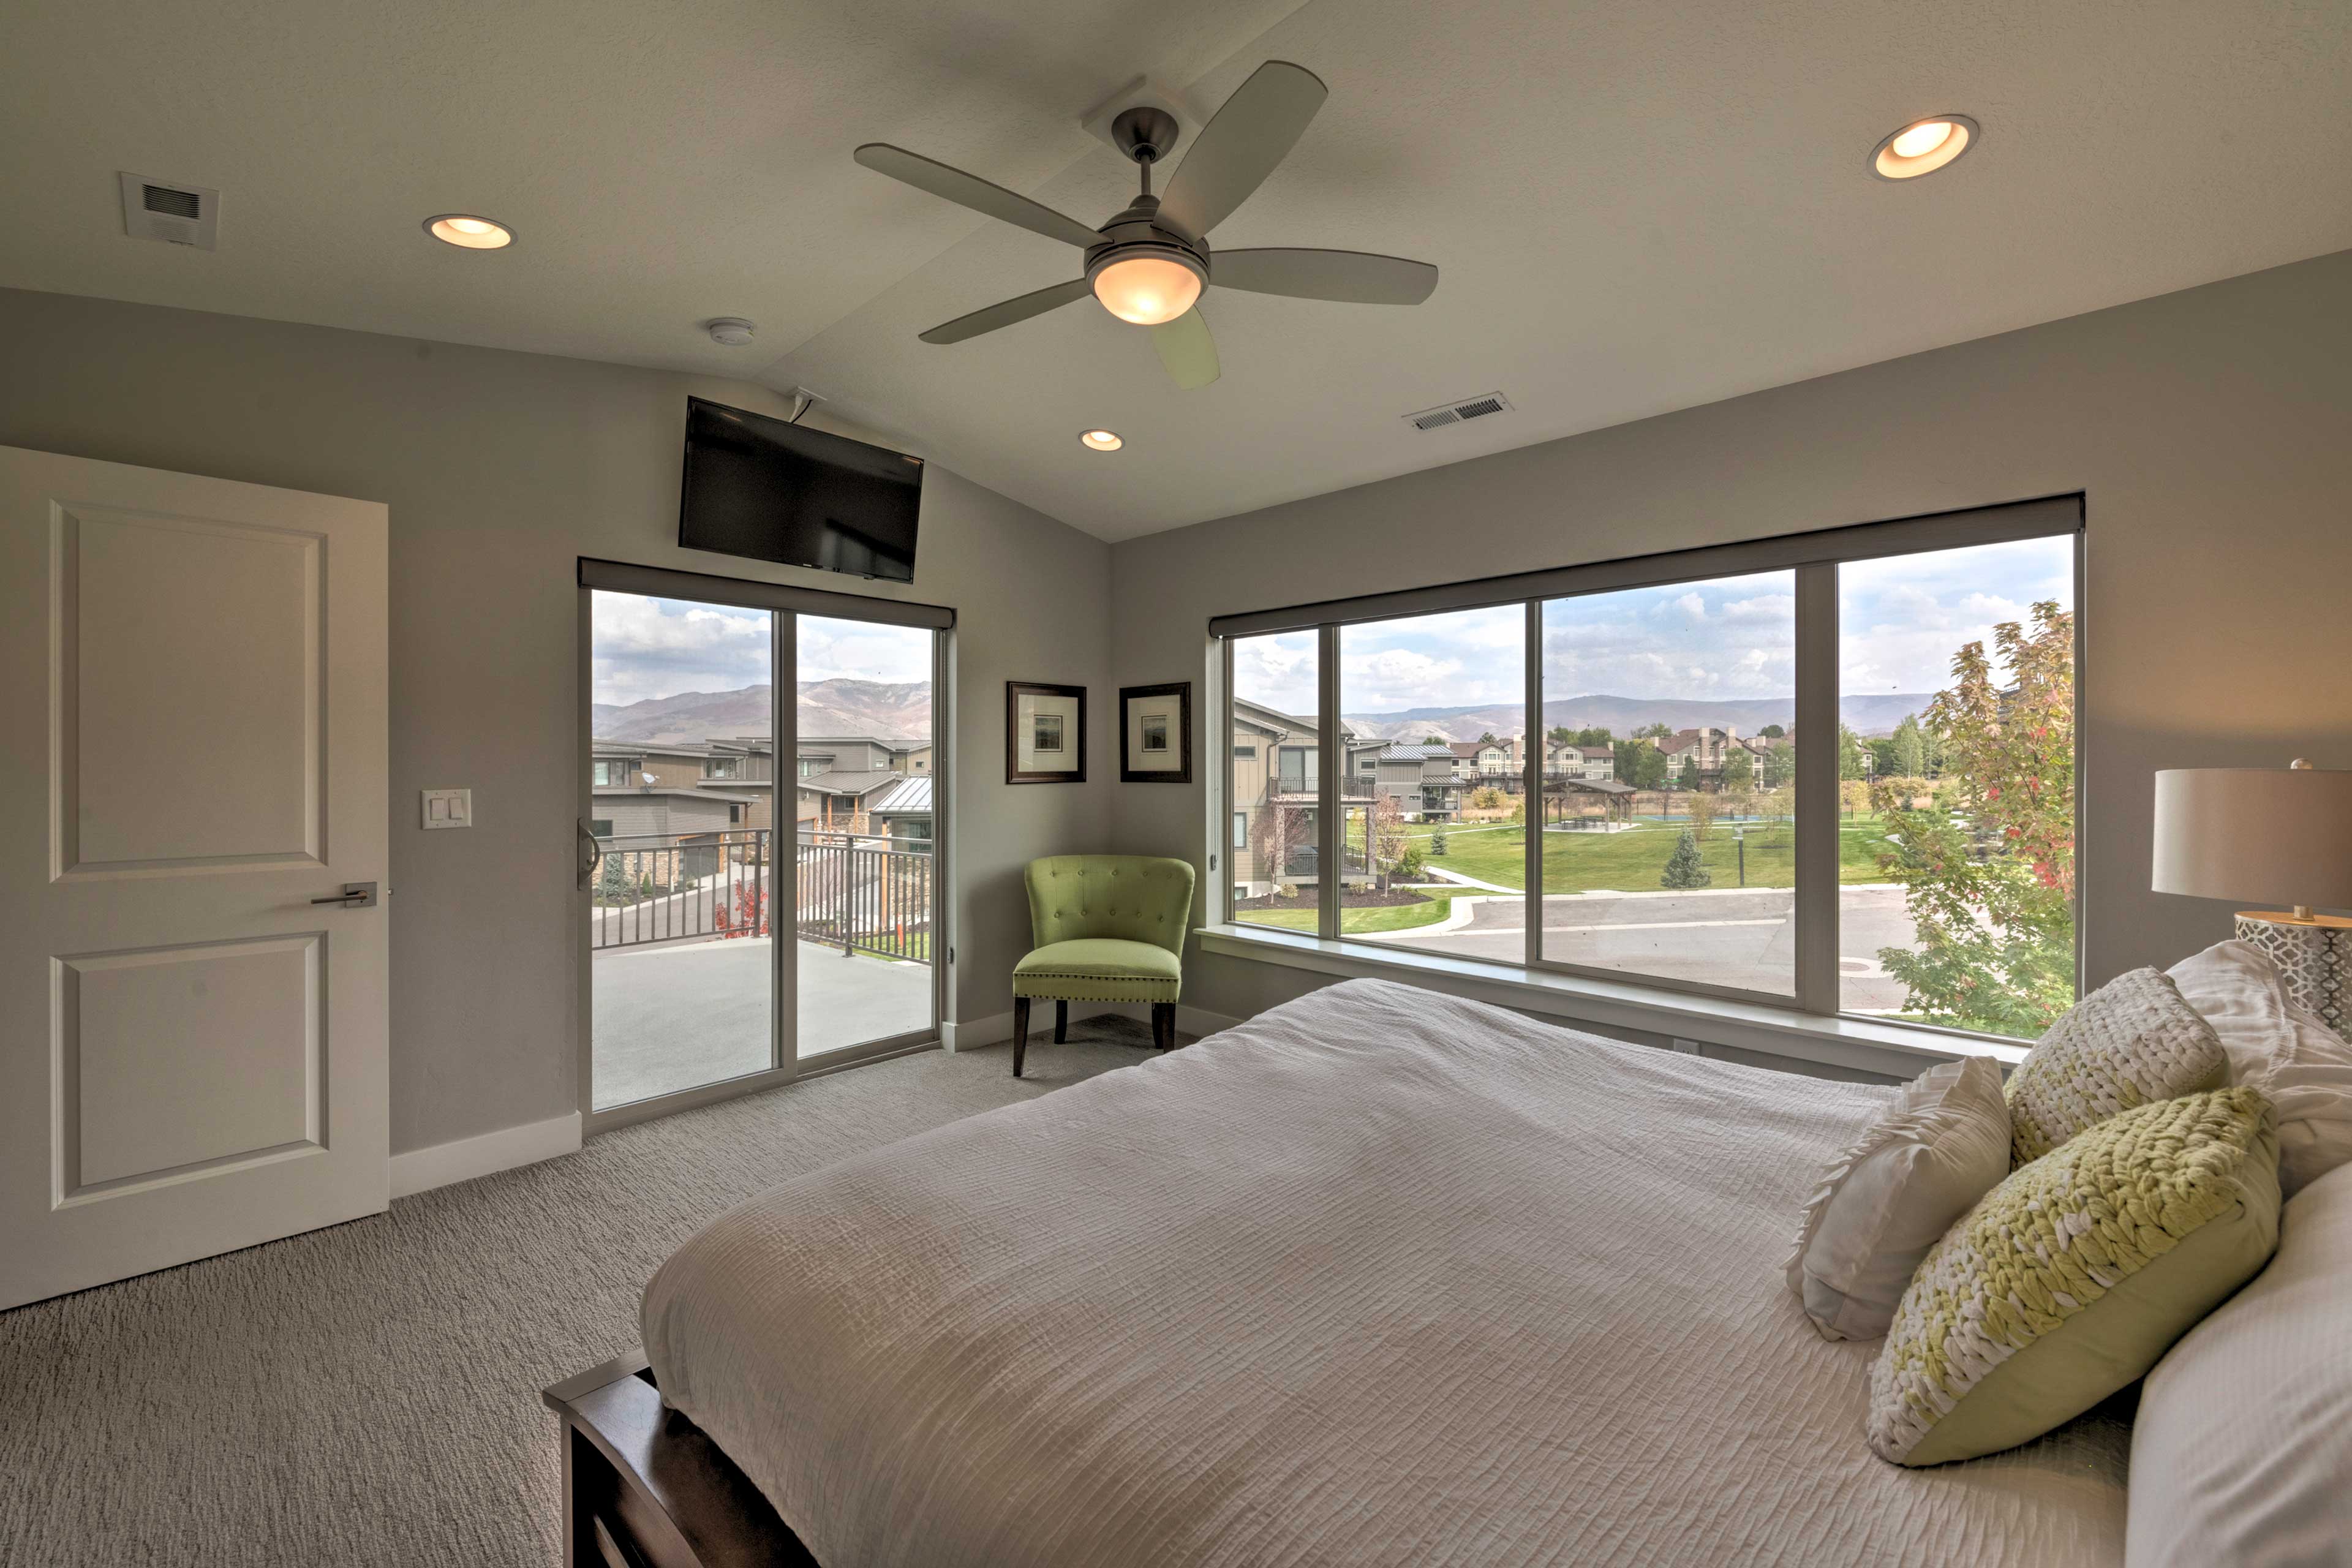 Bedroom 1 | Smart TV | Ceiling Fan | Private Balcony